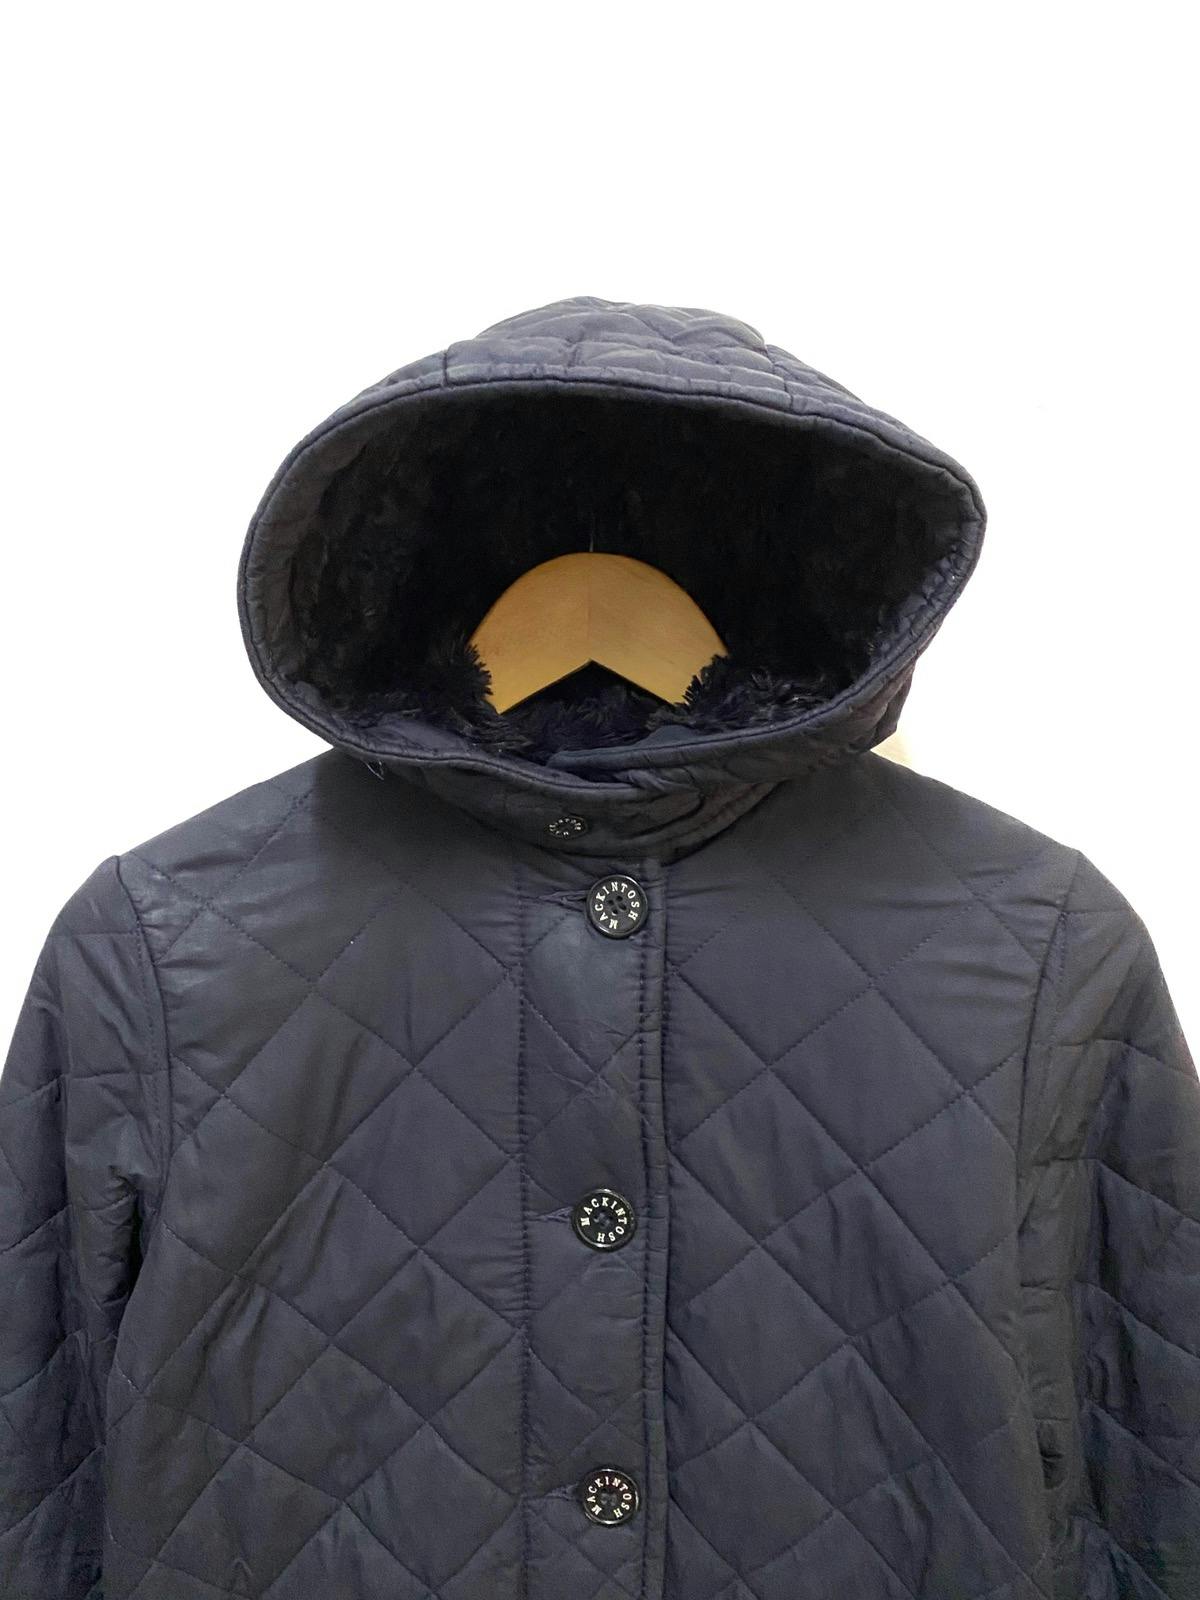 Mackintosh Waverly Quilted Fur Jacket Coat - 2